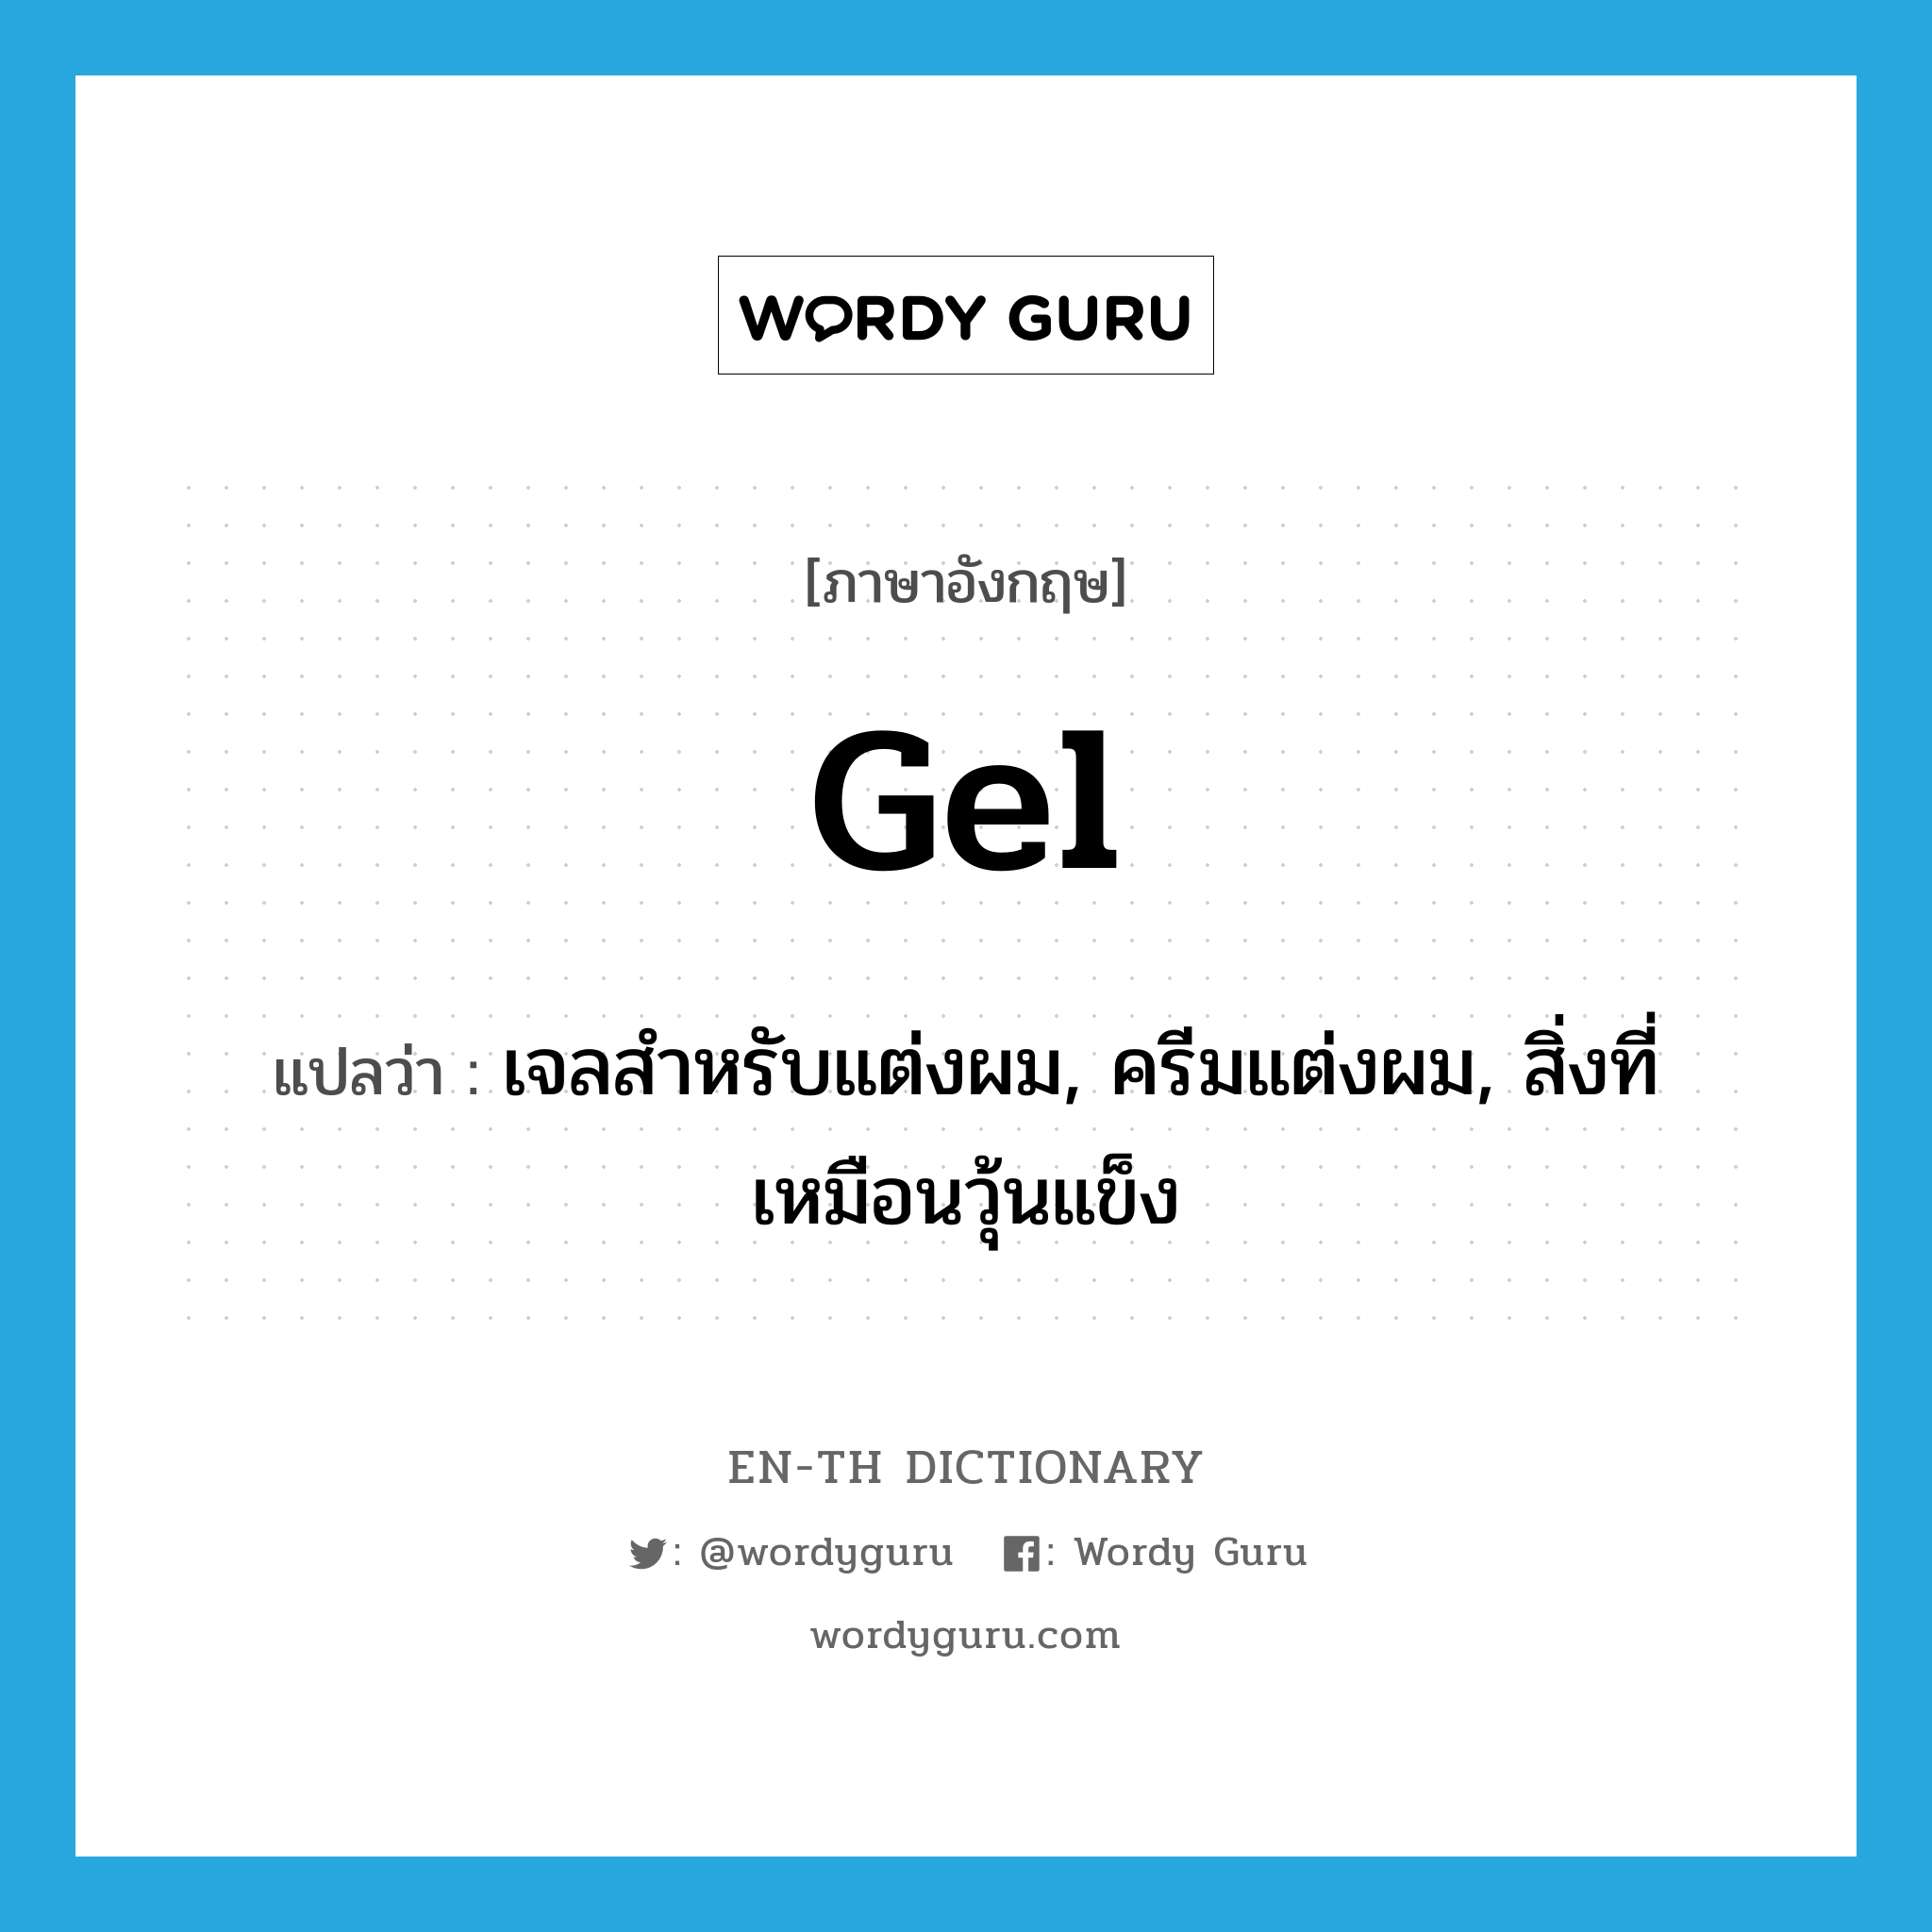 gel แปลว่า?, คำศัพท์ภาษาอังกฤษ gel แปลว่า เจลสำหรับแต่งผม, ครีมแต่งผม, สิ่งที่เหมือนวุ้นแข็ง ประเภท N หมวด N